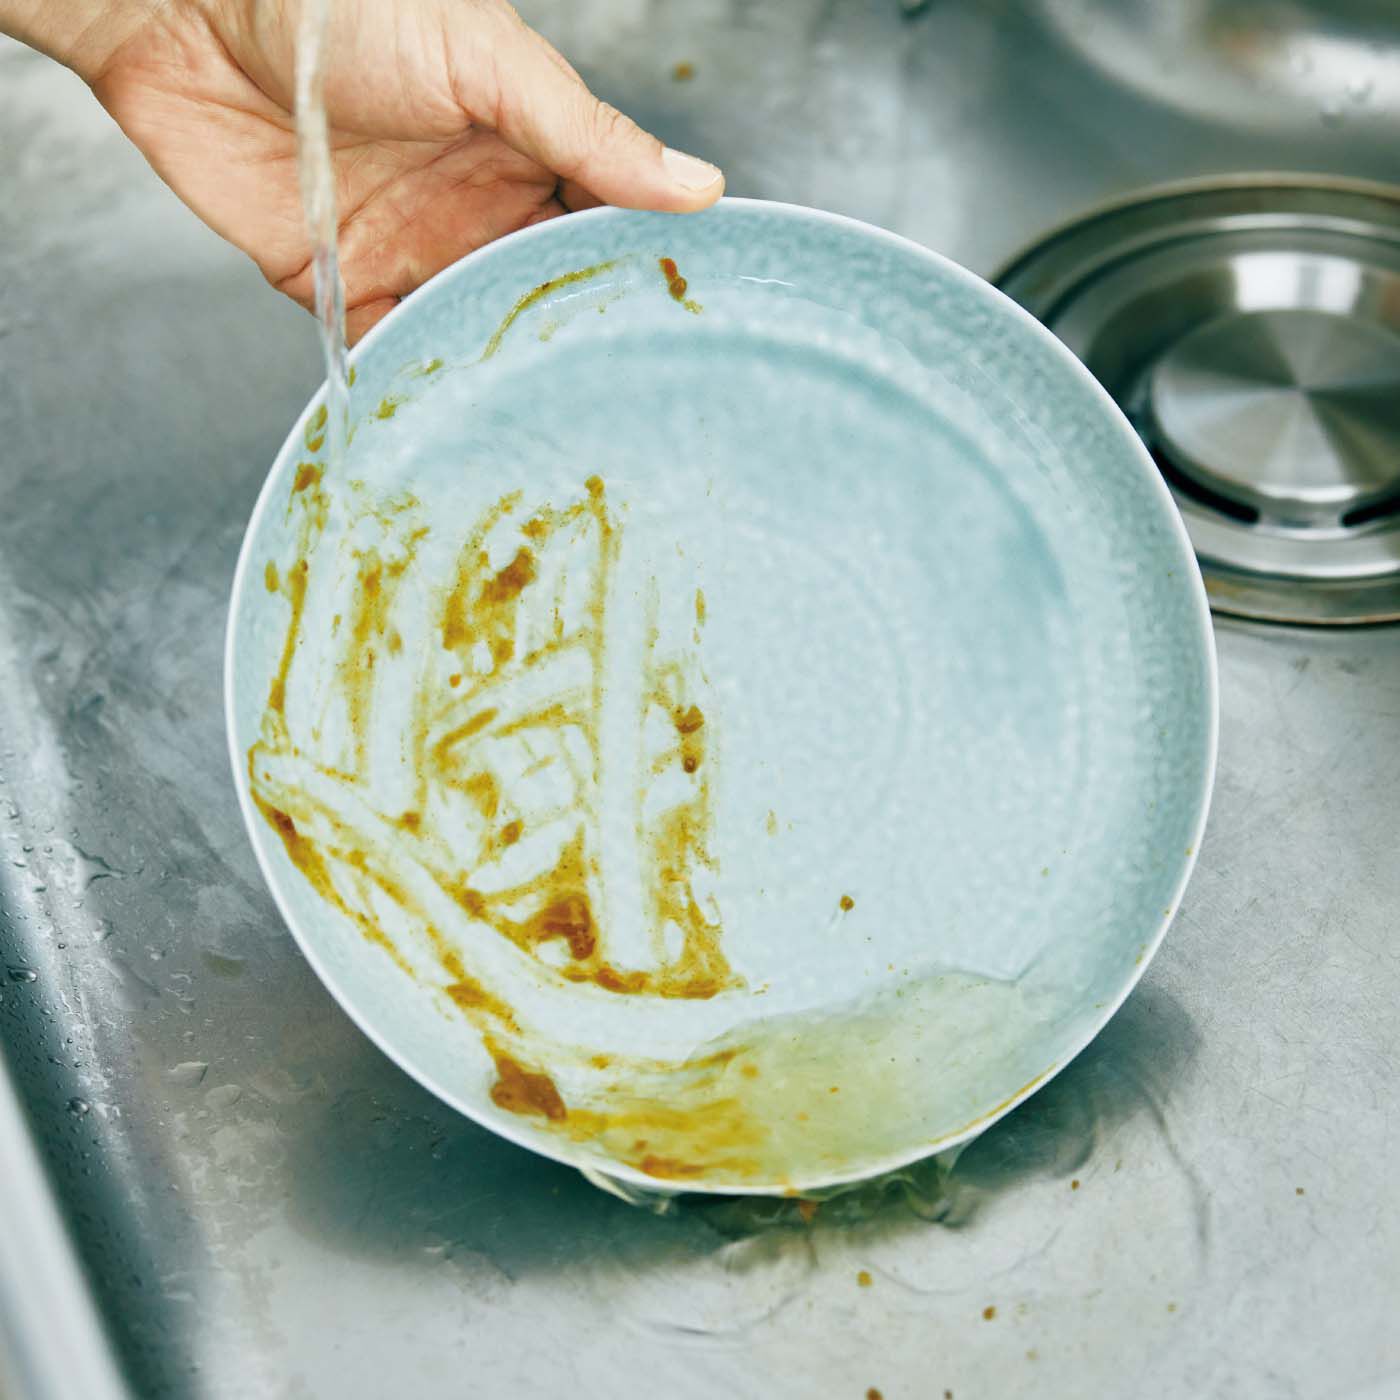 フェリシモの雑貨Kraso|1/d DISH SOAP 食器用洗剤の会|お皿の右半分だけスプレーして水を流すとこんなカンジに。